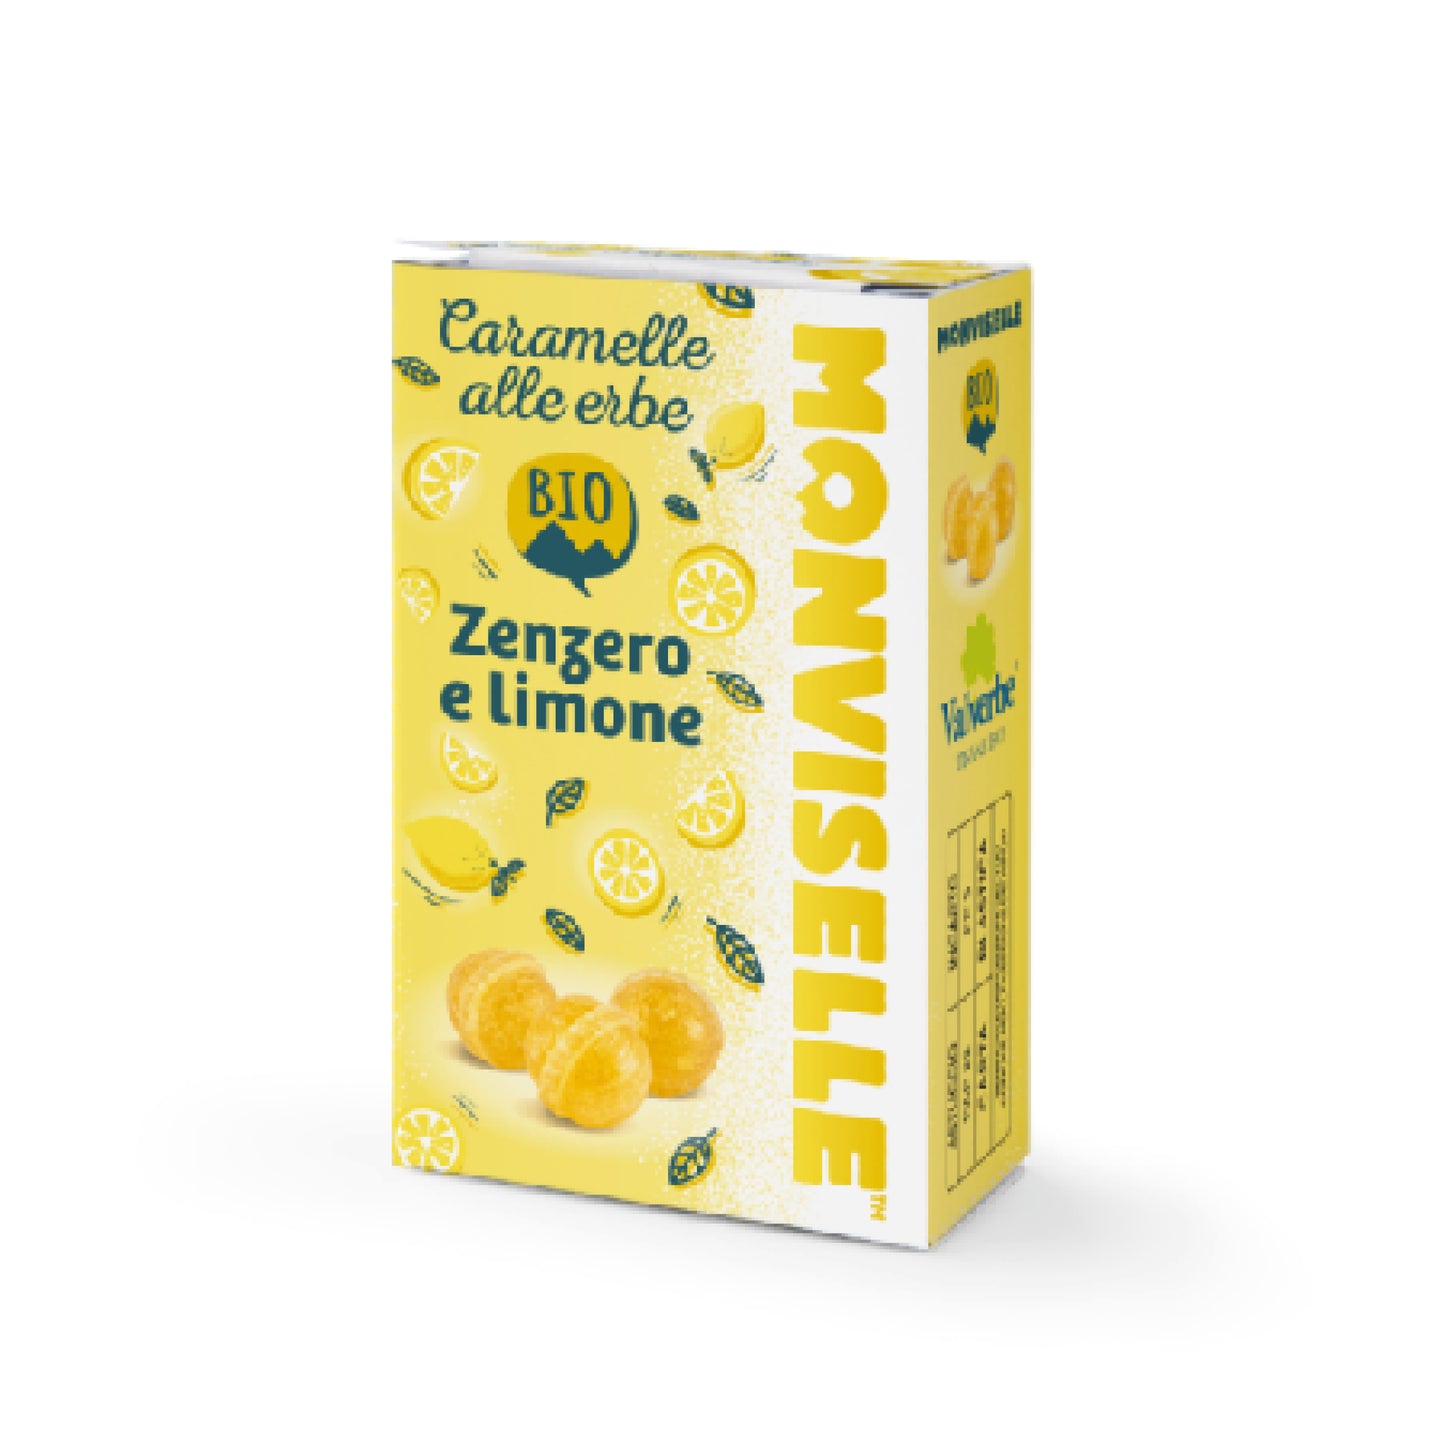 Caramelle Alle Erbe Gusto Zenzero e Limone Di Sicilia 30g